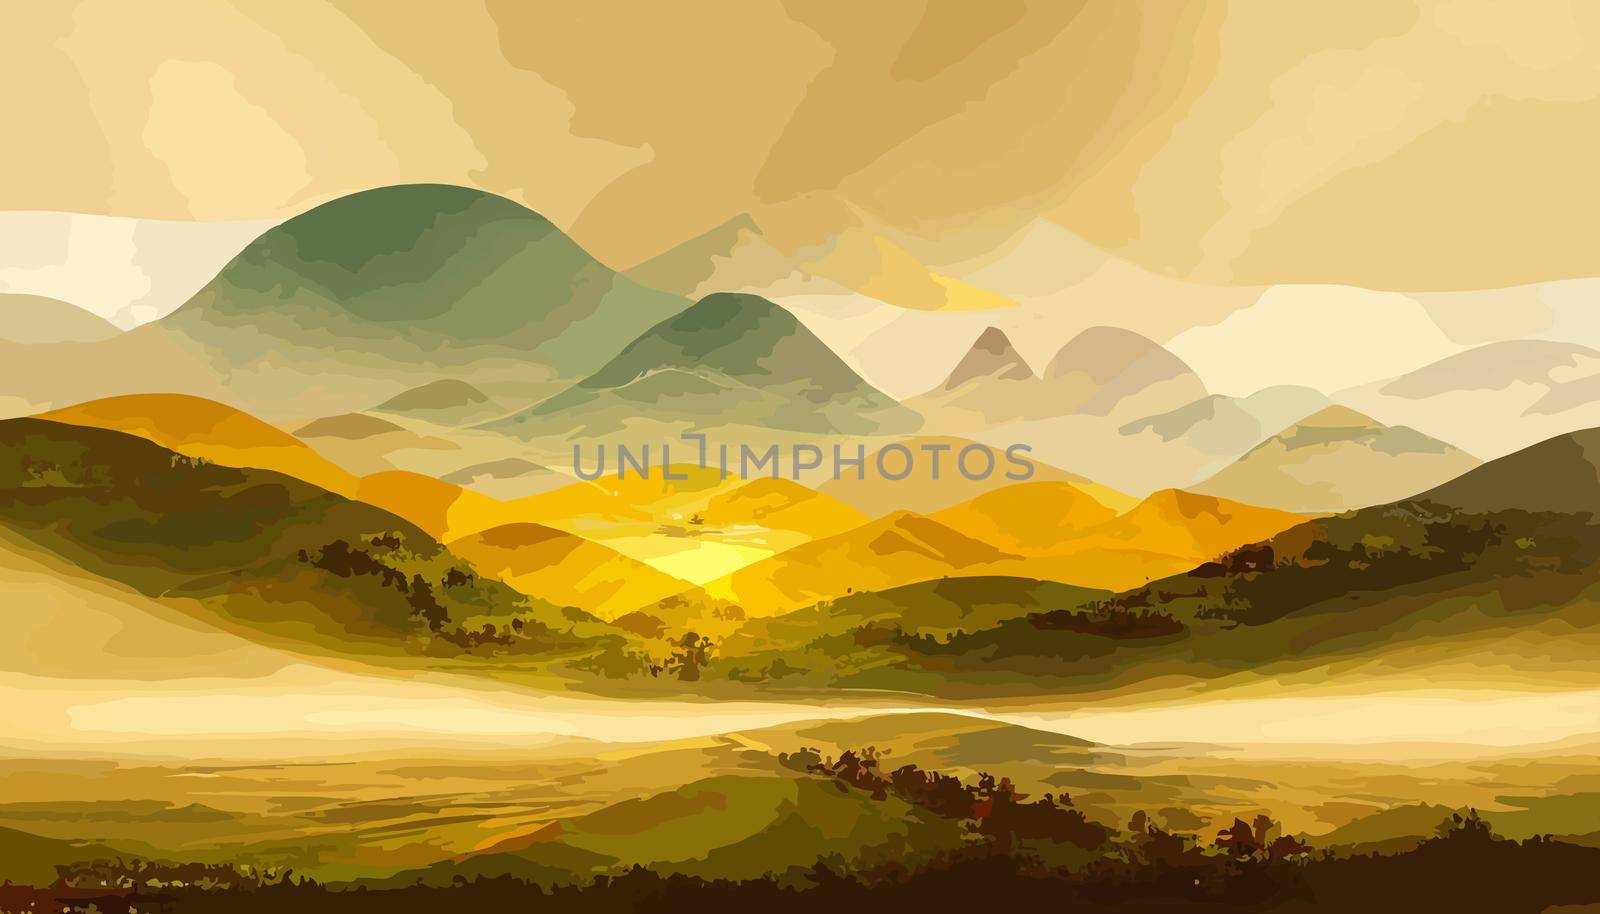 Luxury landscape art background with golden lines illustration. illustration for wallpaper